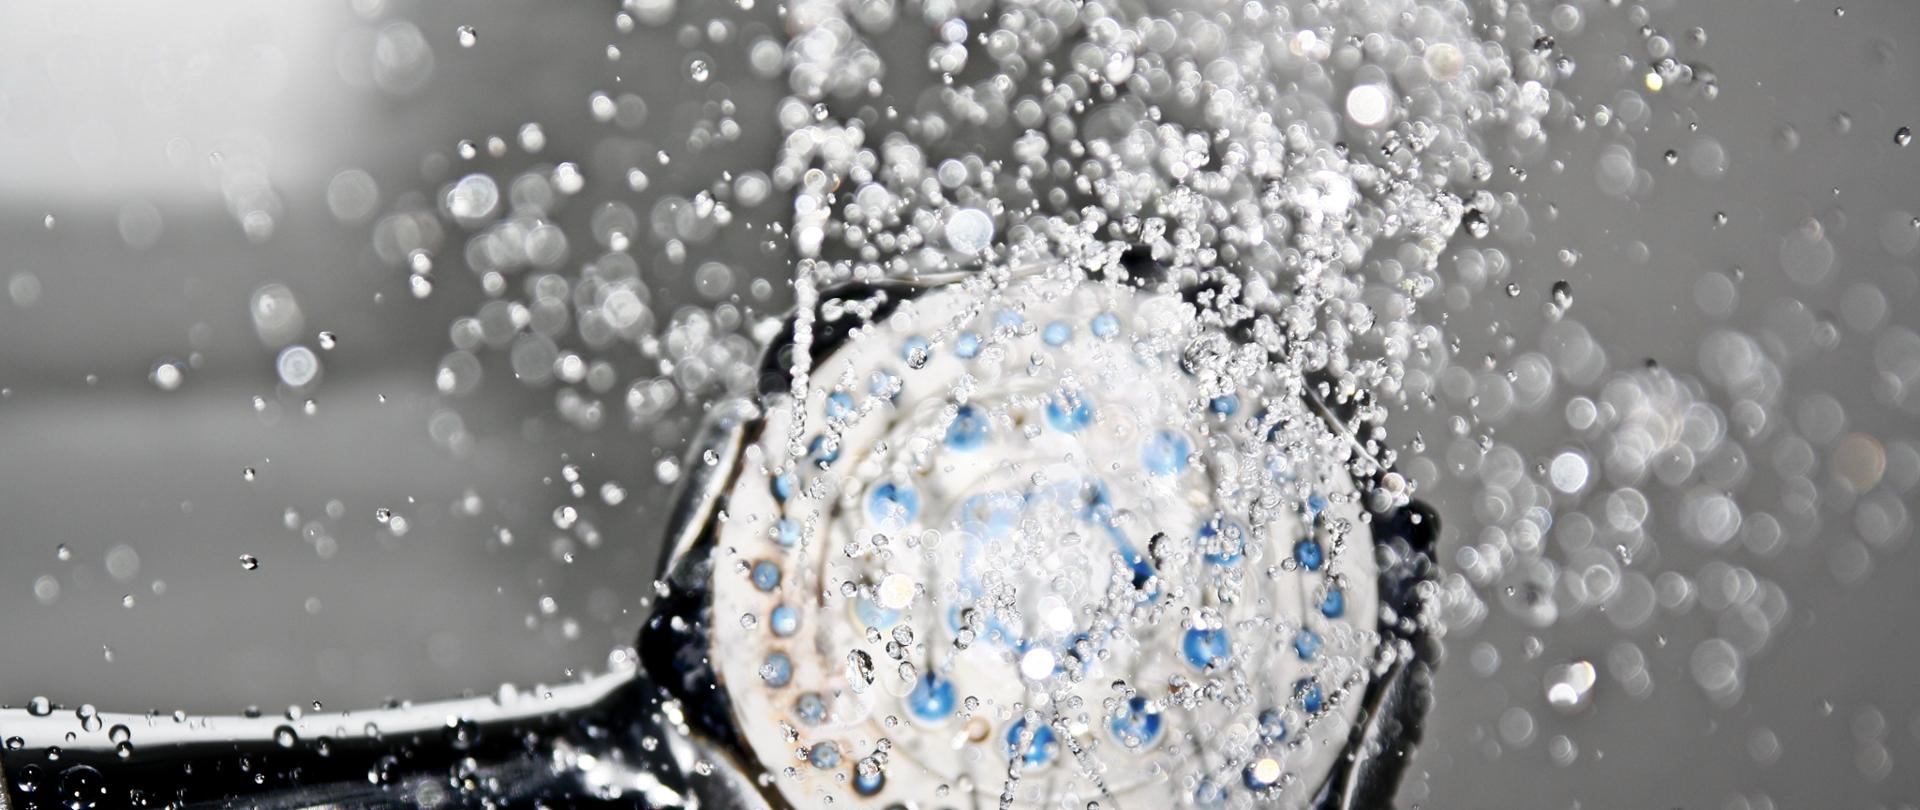 Zdjęcie ukazujące głowicę prysznica, z której wylatują krople wody